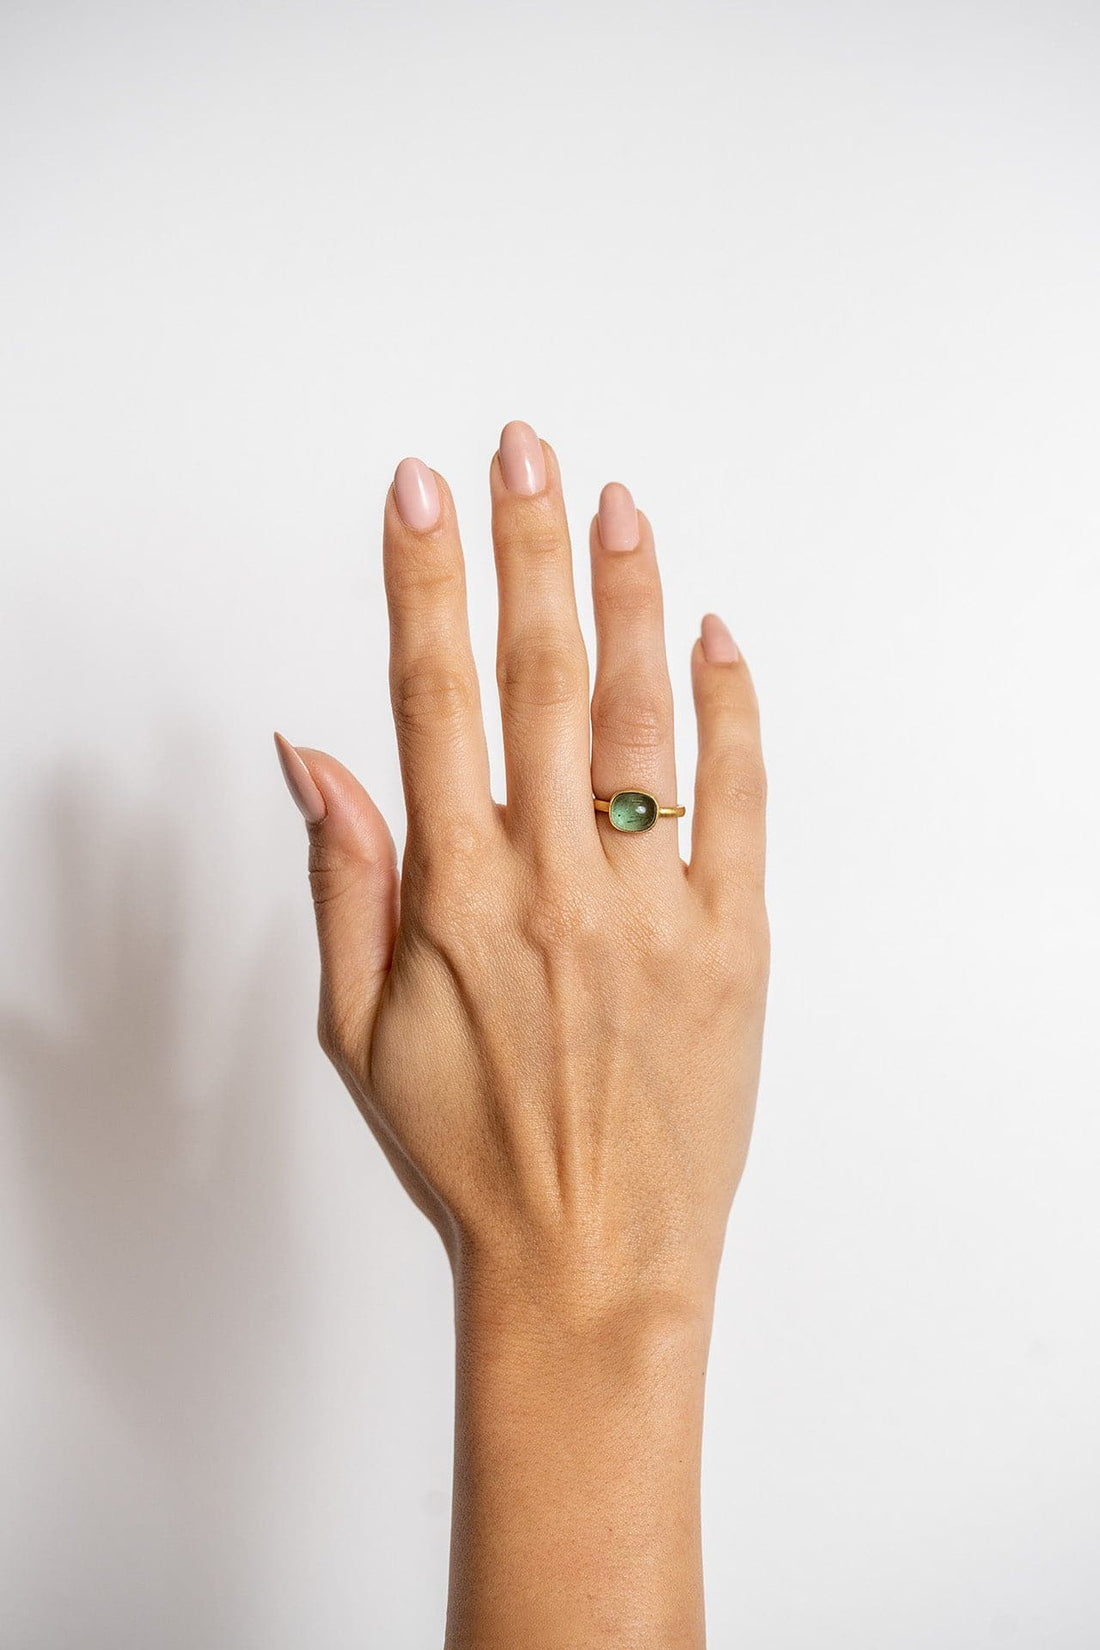 Lika Behar Yellow Gold & Tourmaline Gemstone Ring - Skeie's Jewelers